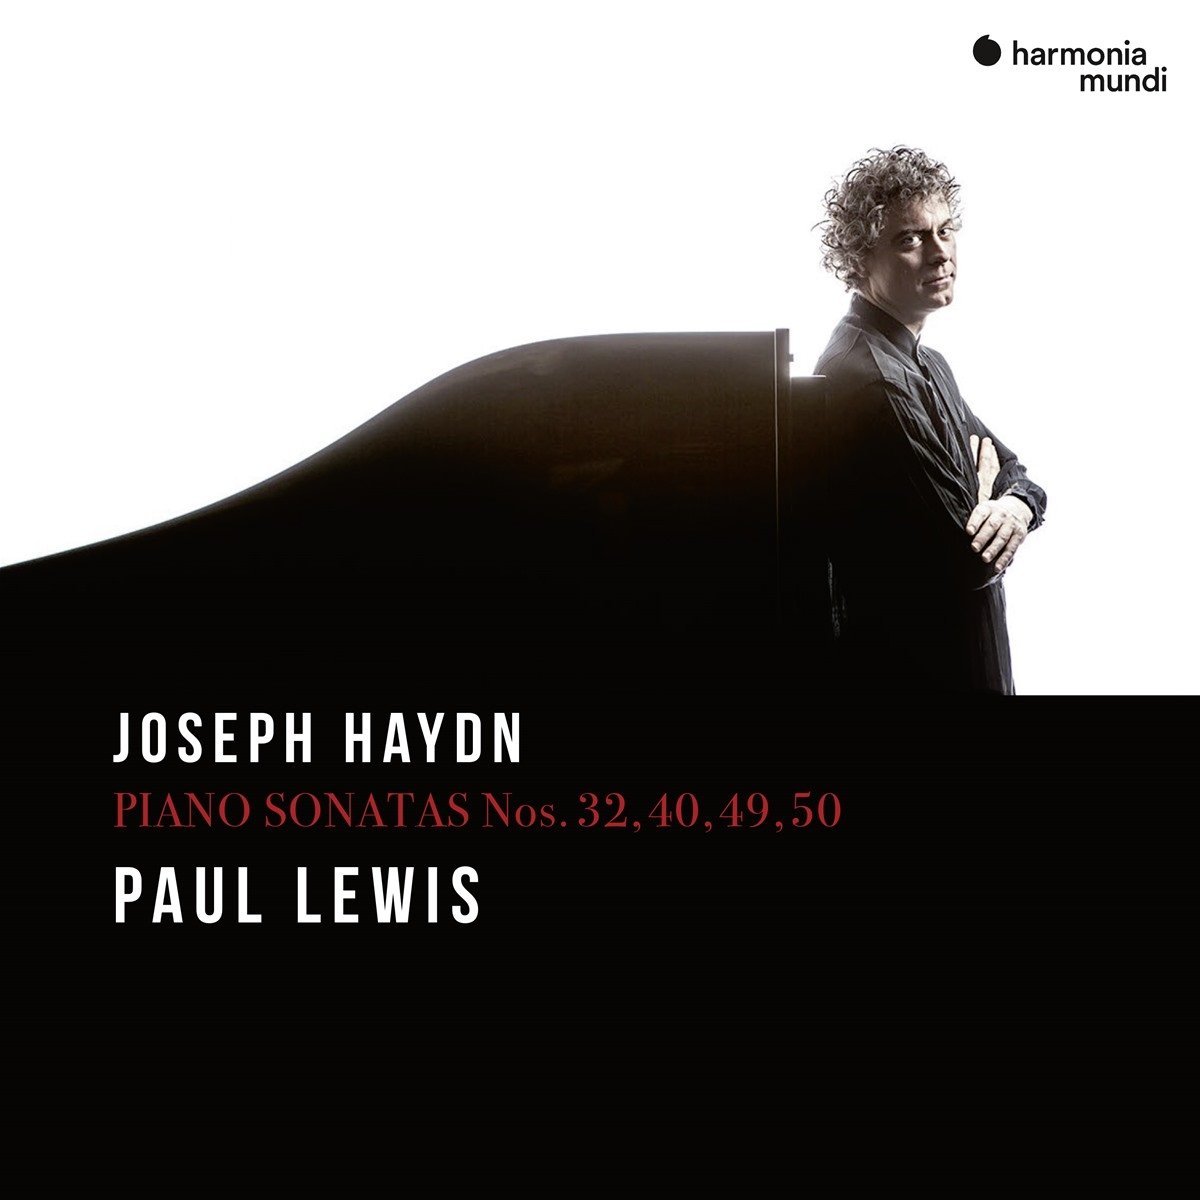 Paul Lewis's Haydn